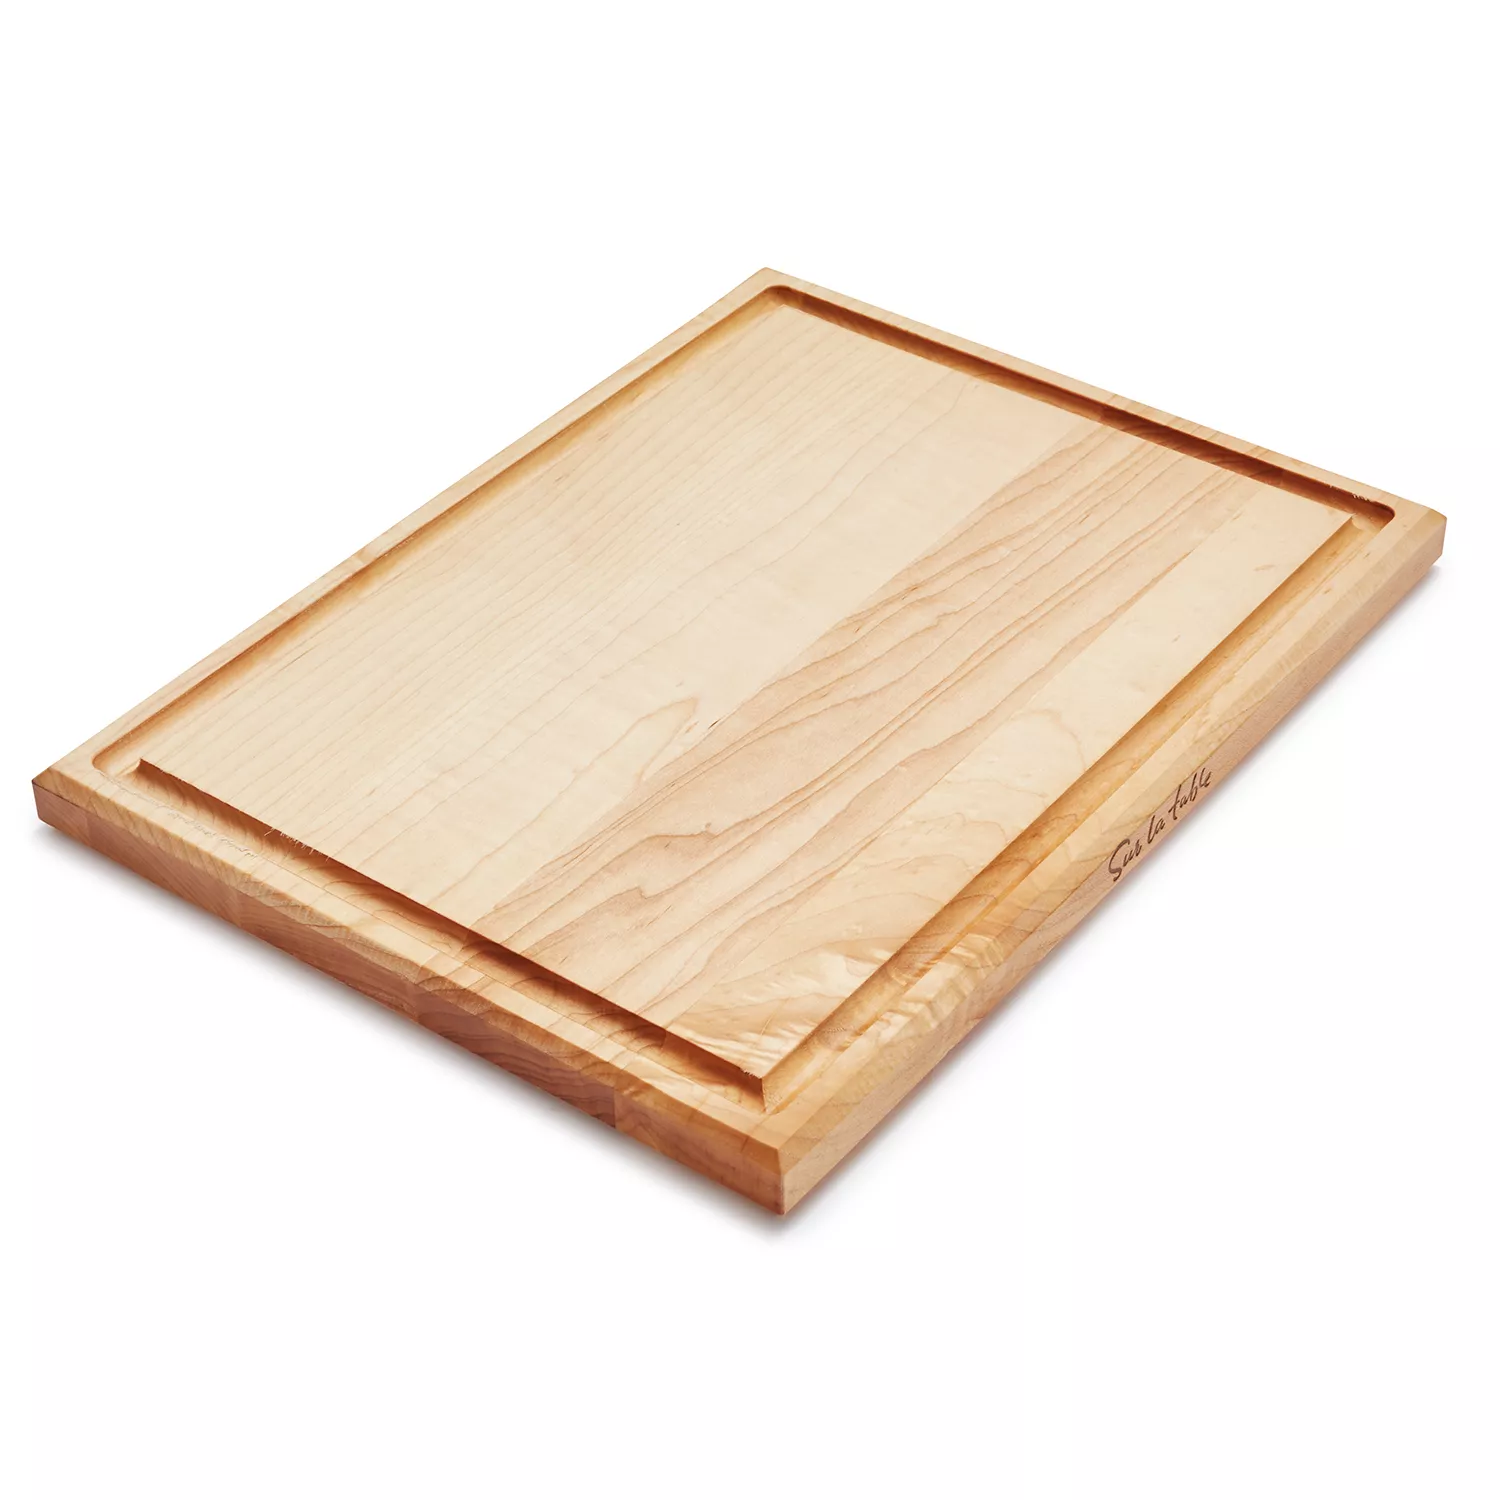 Cherry Wood 20x14 Bread Board Plus Peel